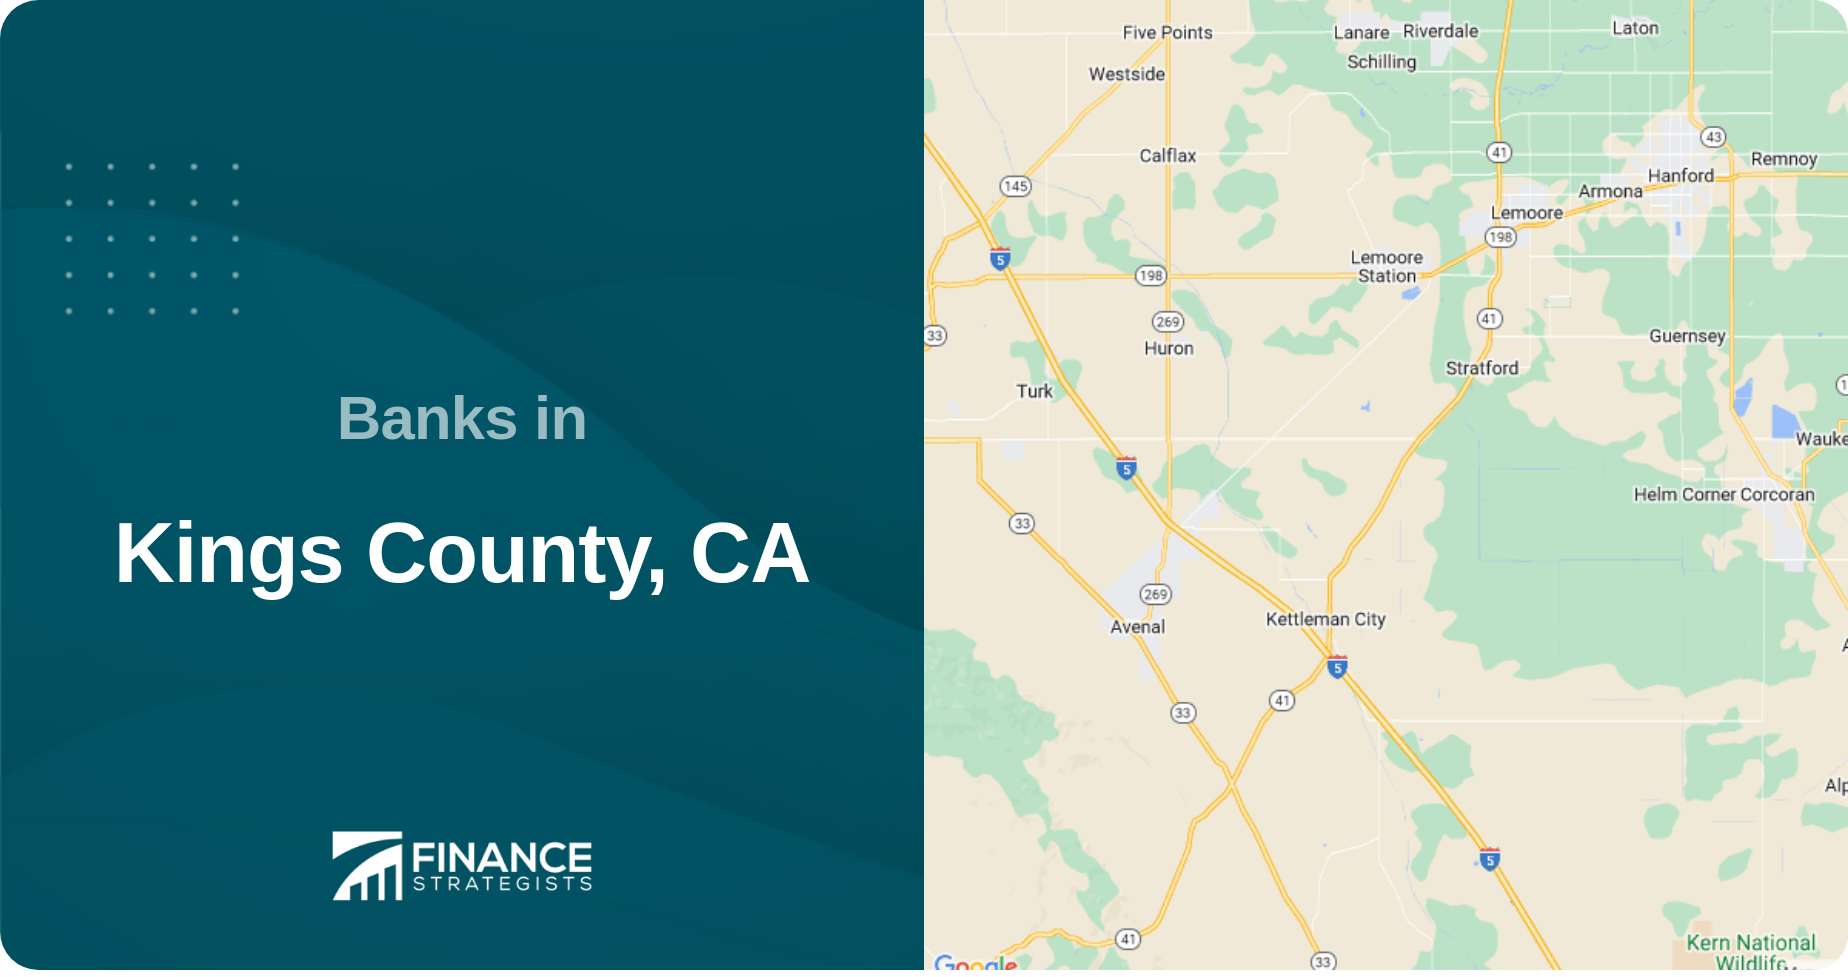 Banks in Kings County, CA